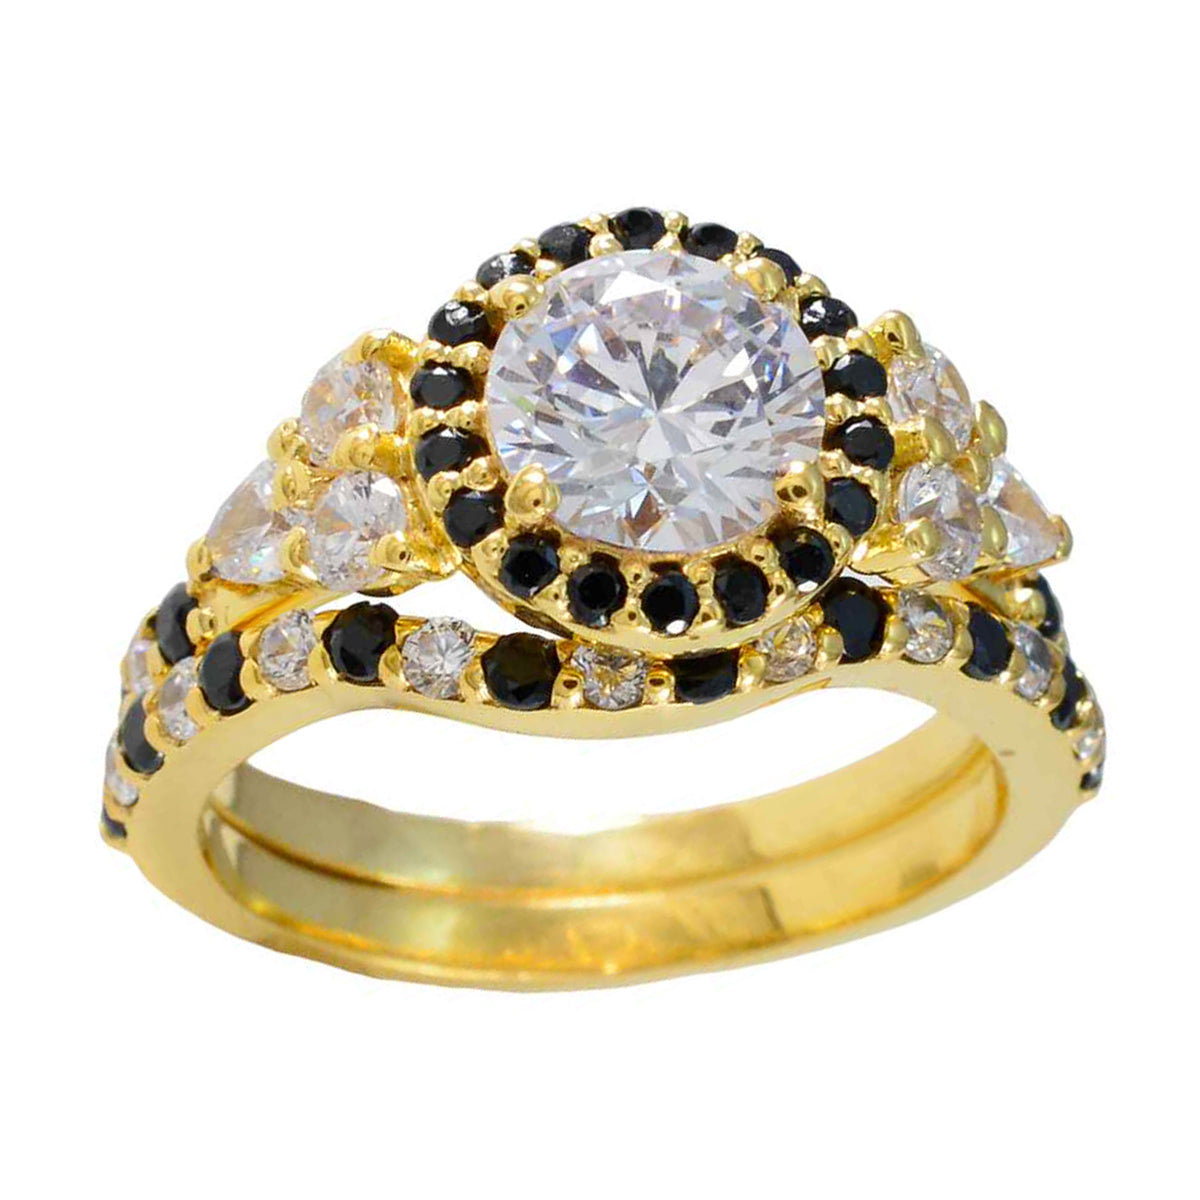 Anillo de plata total riyo con chapado en oro amarillo, piedra de zafiro azul, ajuste de punta redonda, joyería elegante, anillo para el día de la madre